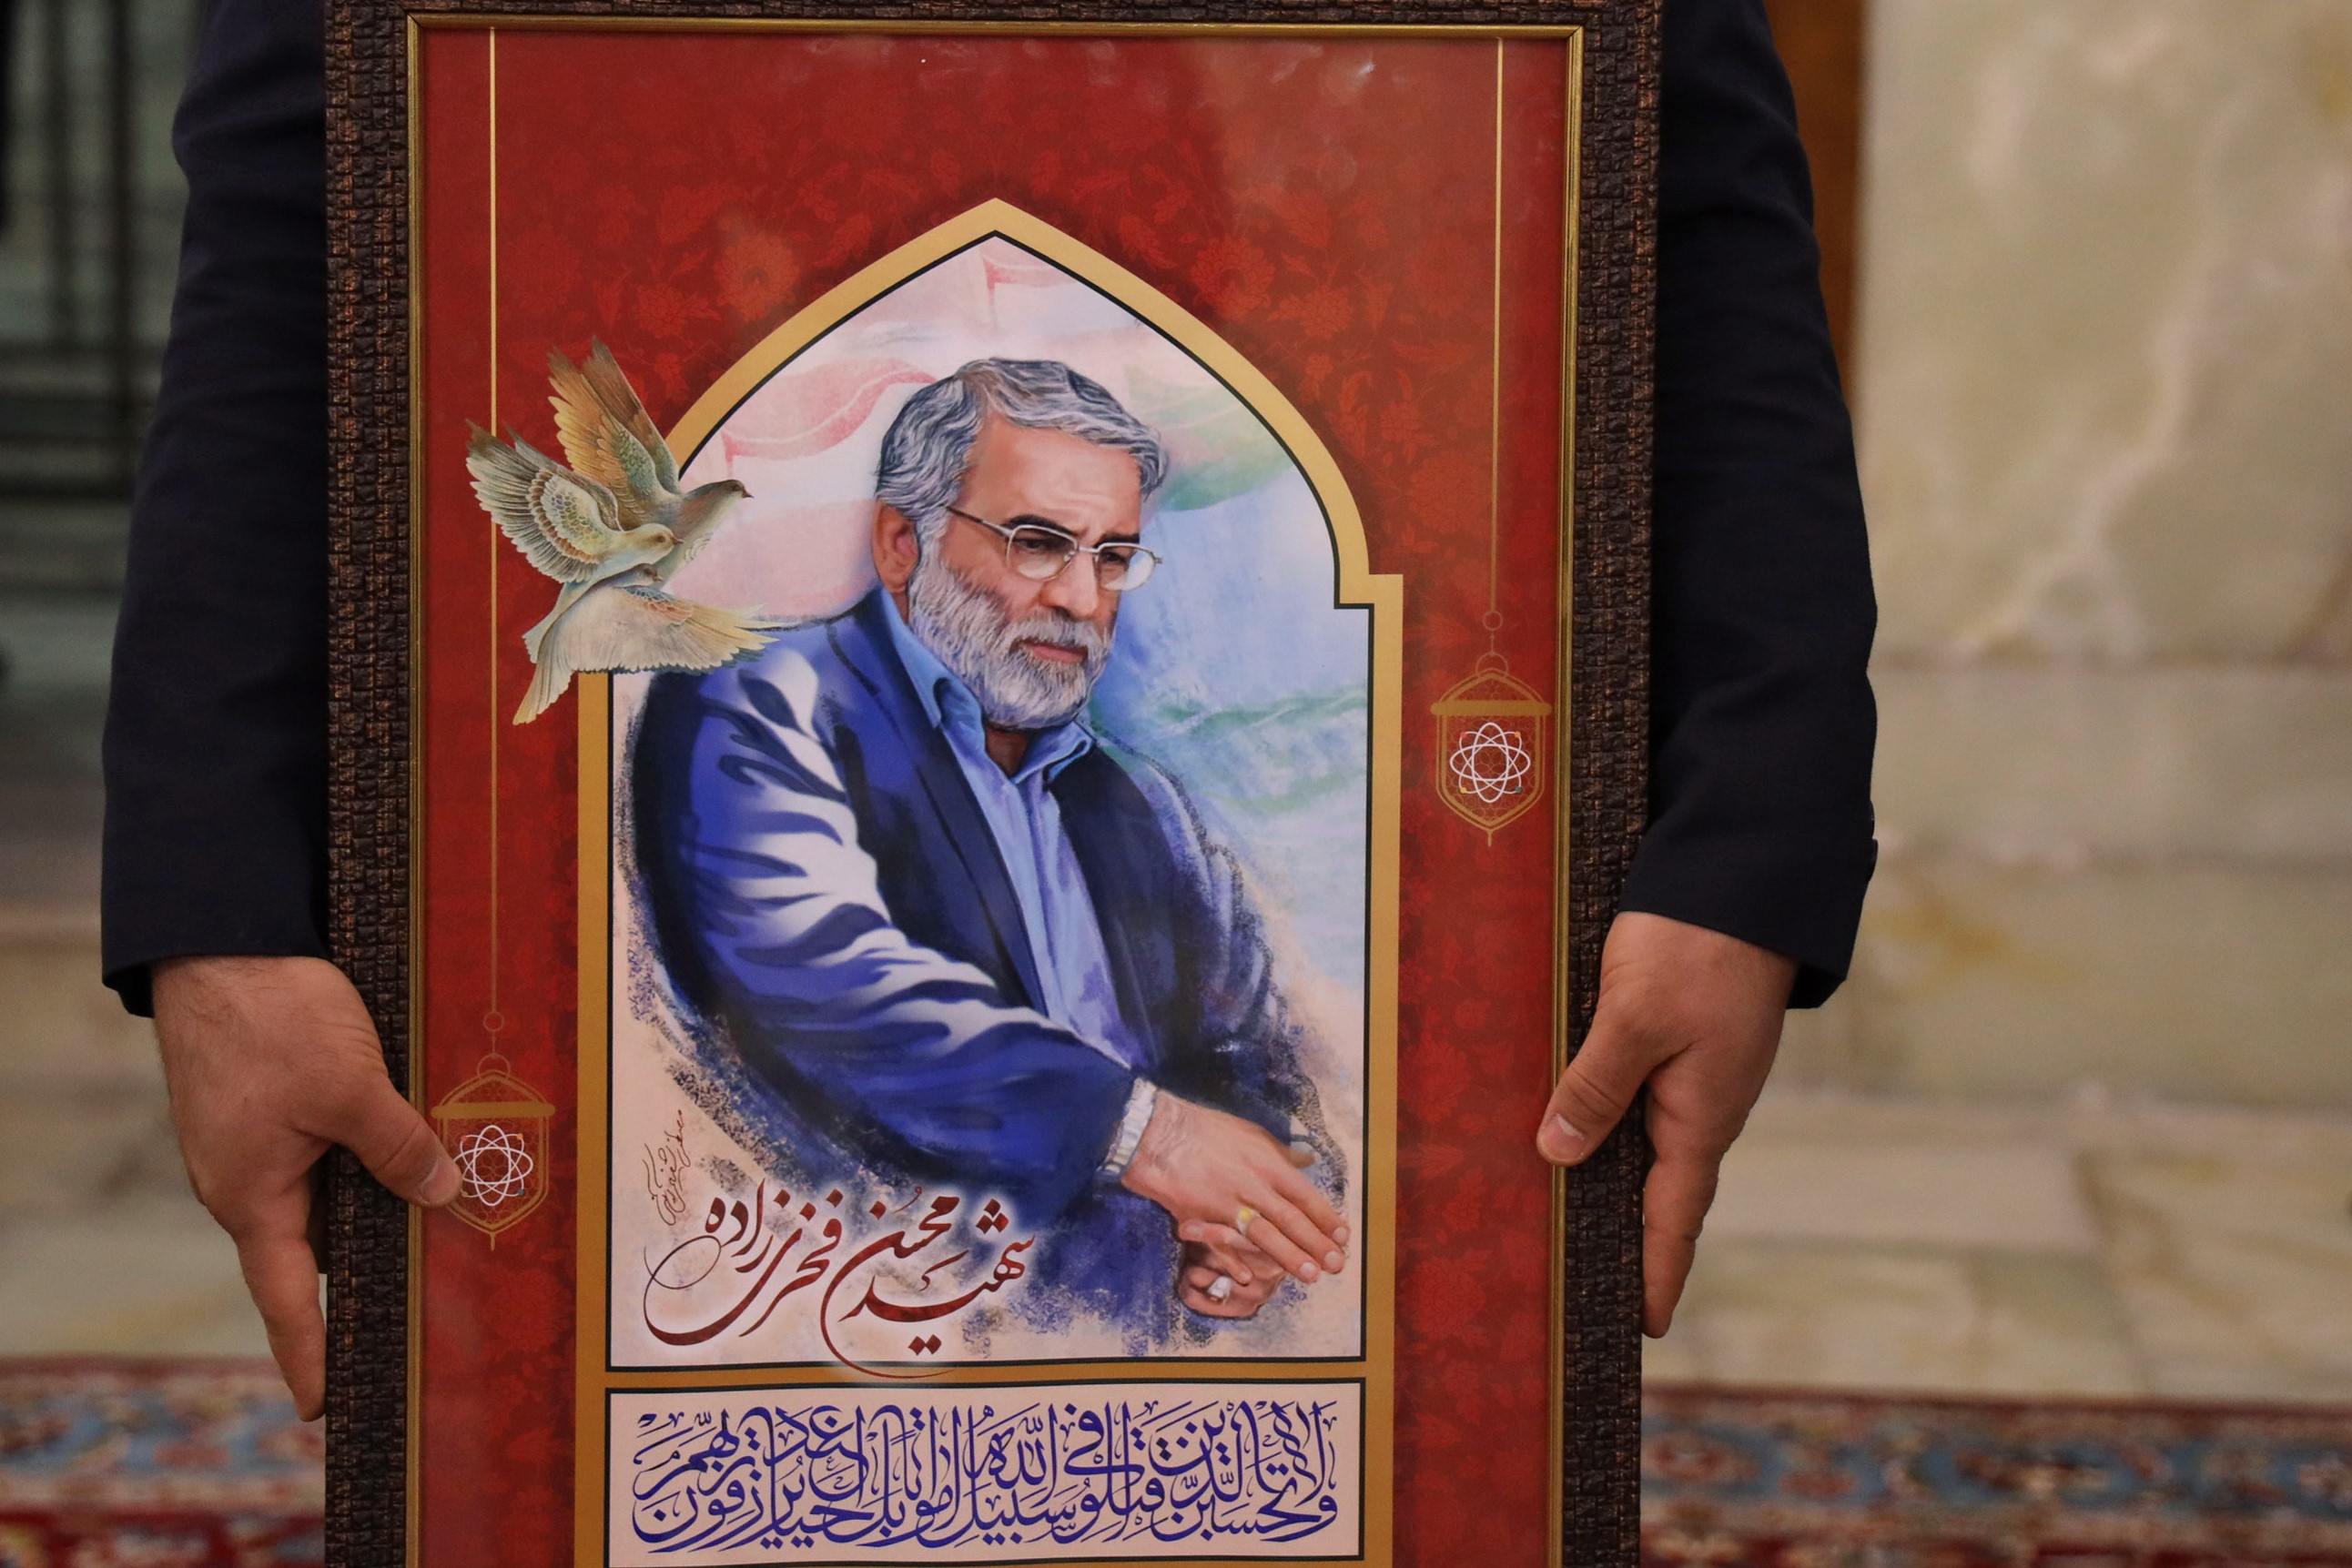 Slika na listiću koju je pružilo iransko Ministarstvo odbrane 29. novembra 2020. prikazuje slugu imama R.